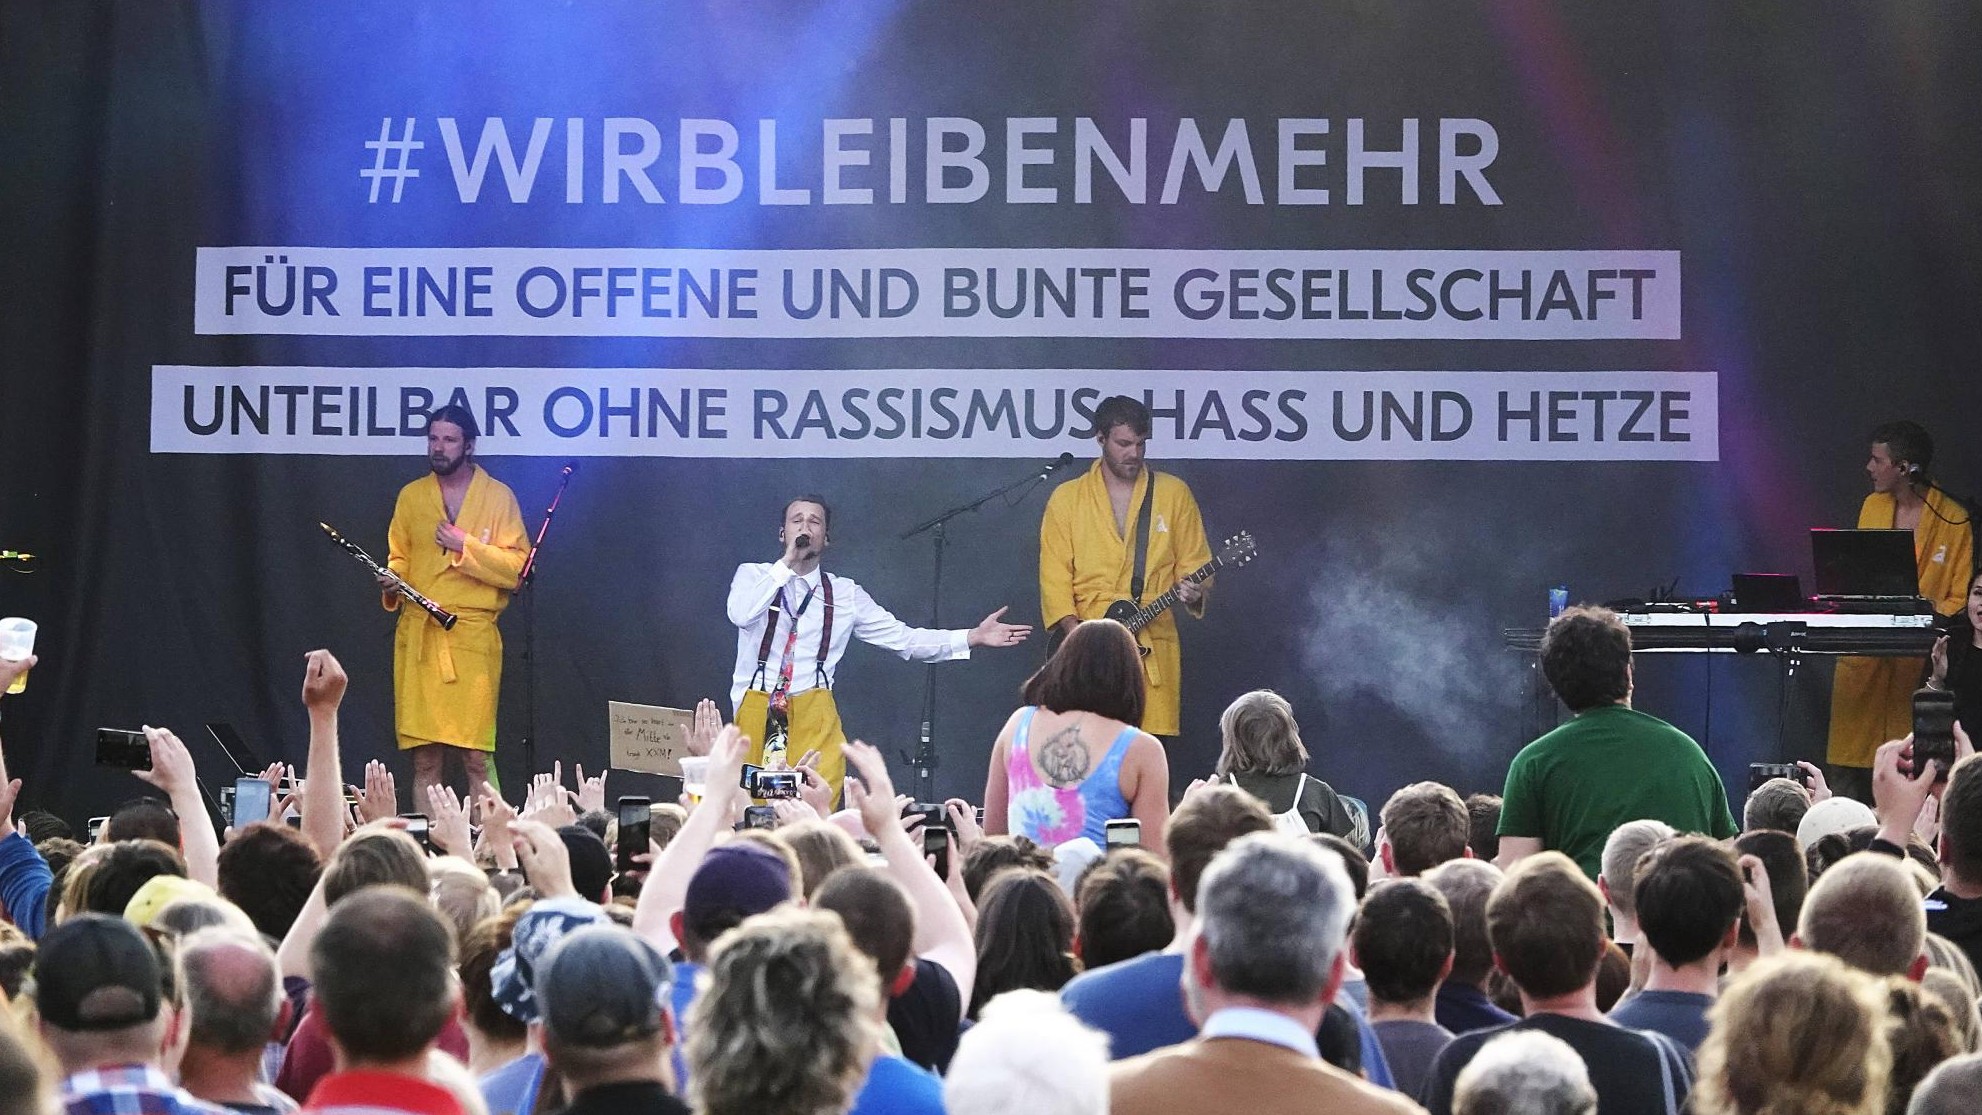 Festival "Kosmos Chemnitz" Weltoffen und bunt gegen Rechts